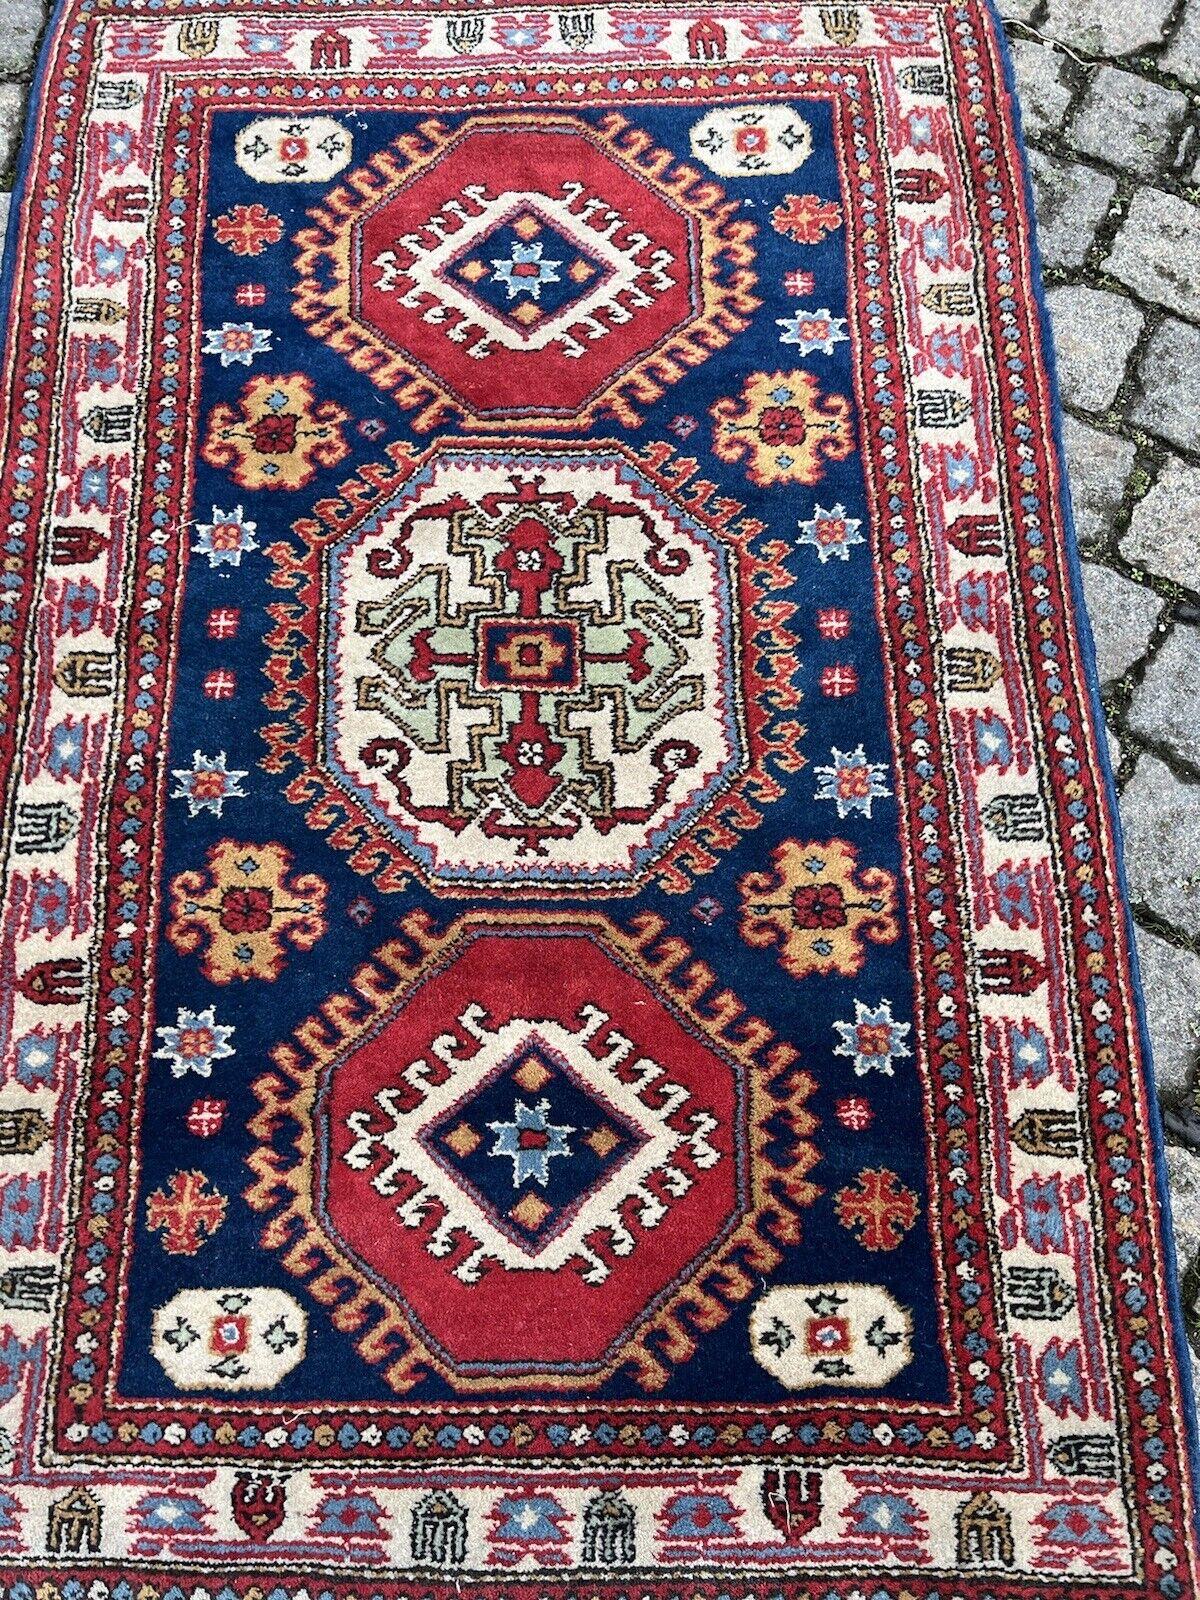 Handgefertigter kaukasischer Vintage Eriwan-Teppich

Holen Sie sich ein Stück Geschichte nach Hause mit diesem handgefertigten kaukasischen Eriwan-Teppich im Vintage-Stil. Dieser Teppich wurde in den 1970er Jahren aus Wolle hergestellt, einem